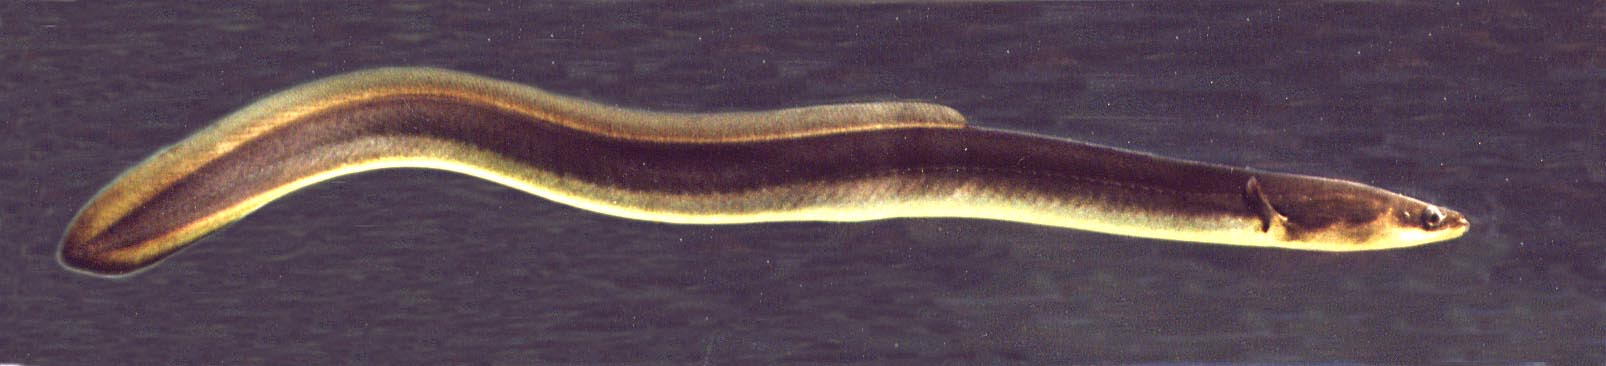 Freshwater eel wallpaper